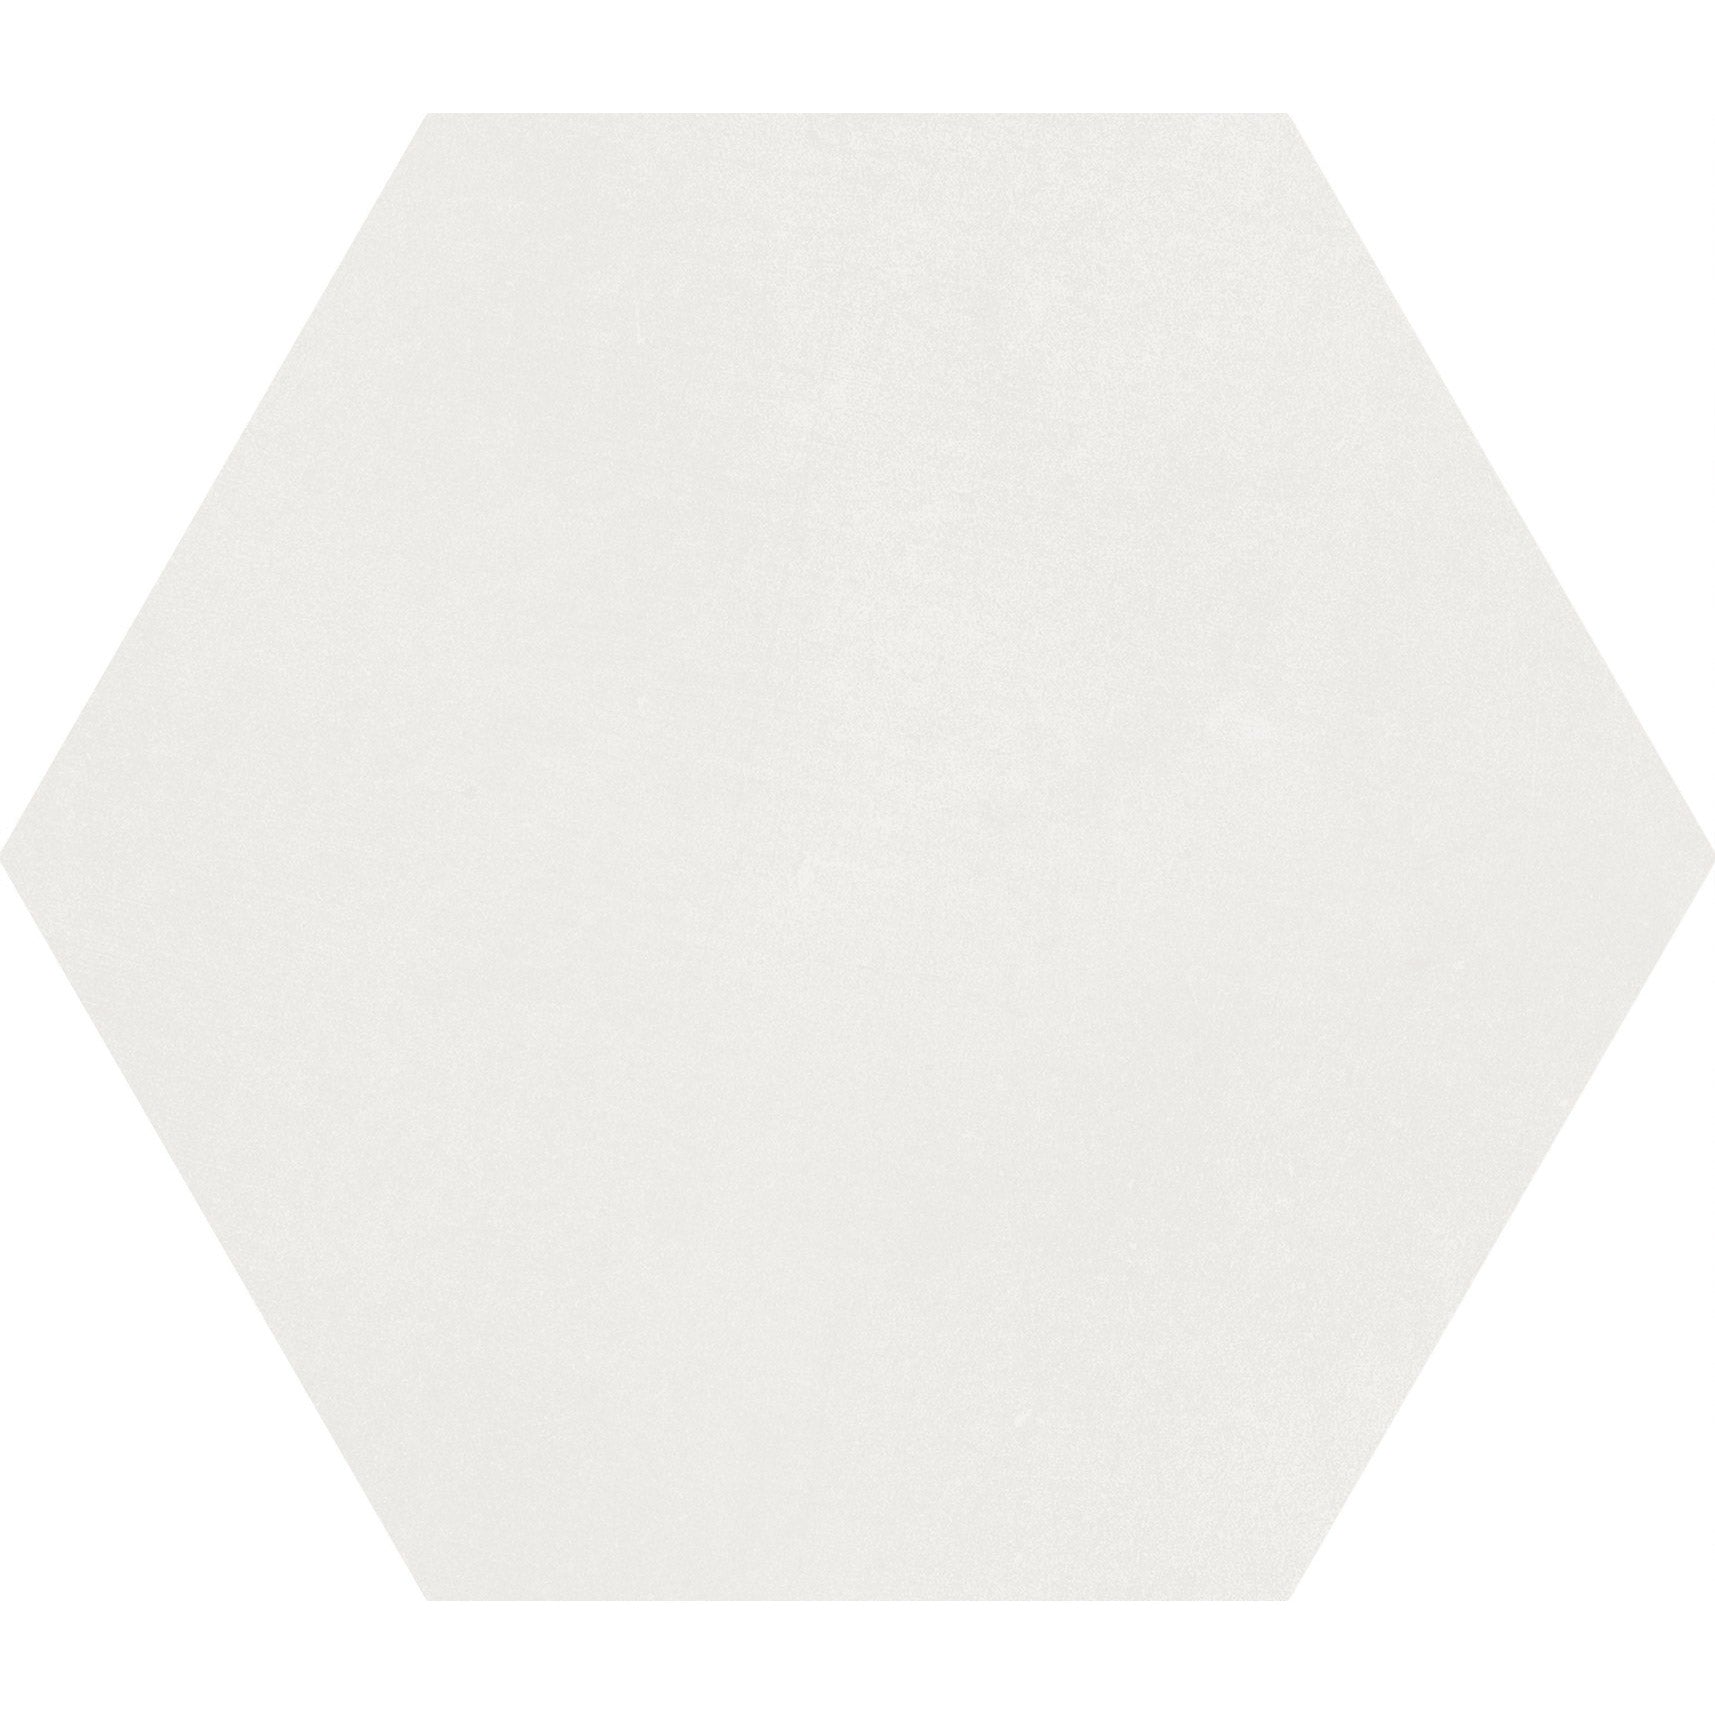 Soci Tile - Aura Hexagon 9" x 10" Porcelain Tile - White